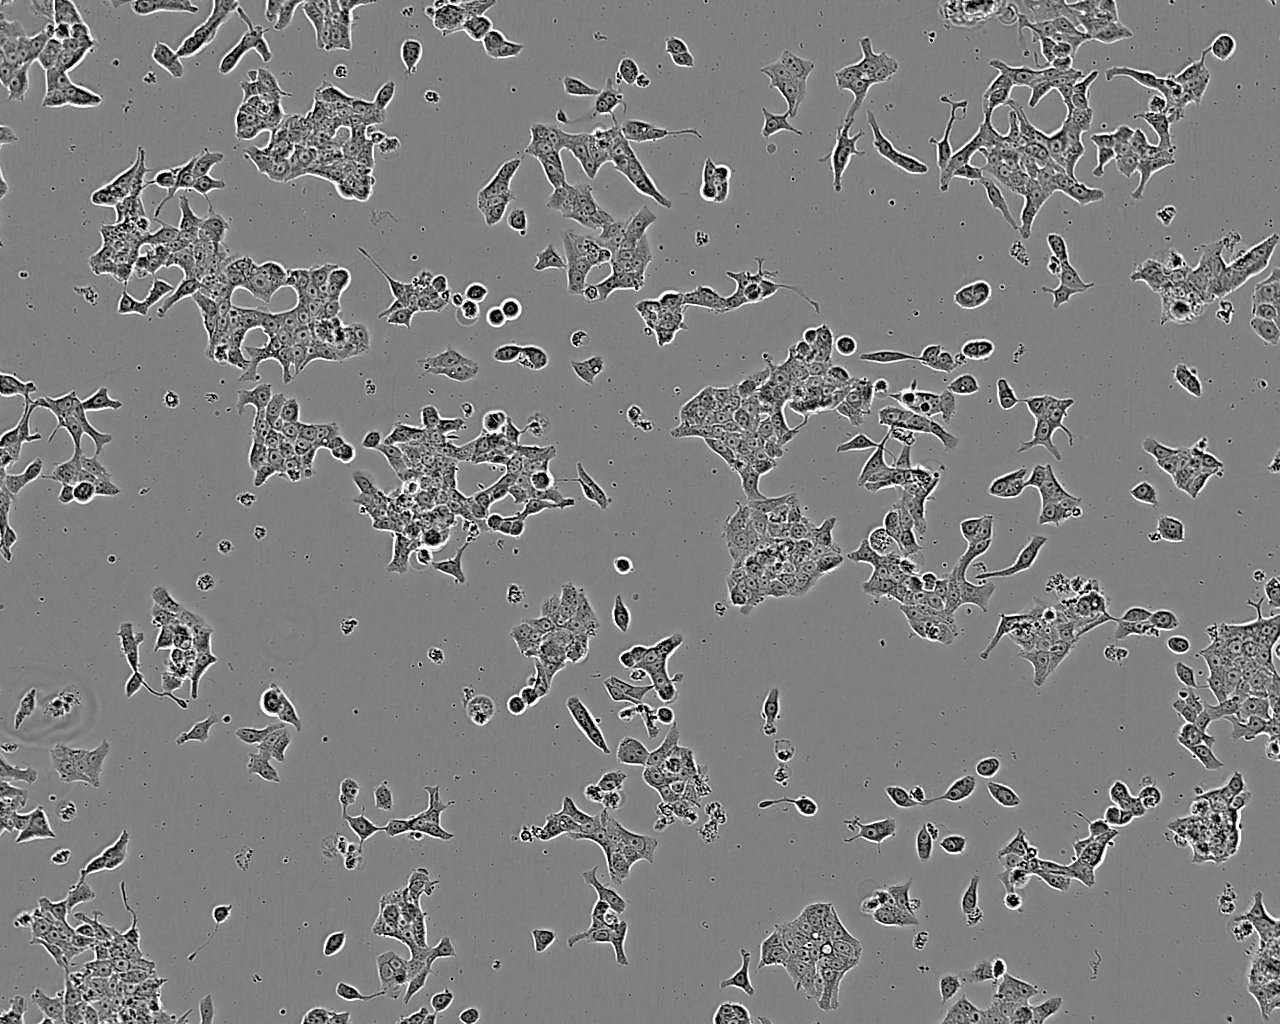 NCI-H196 epithelioid cells人肺癌细胞系